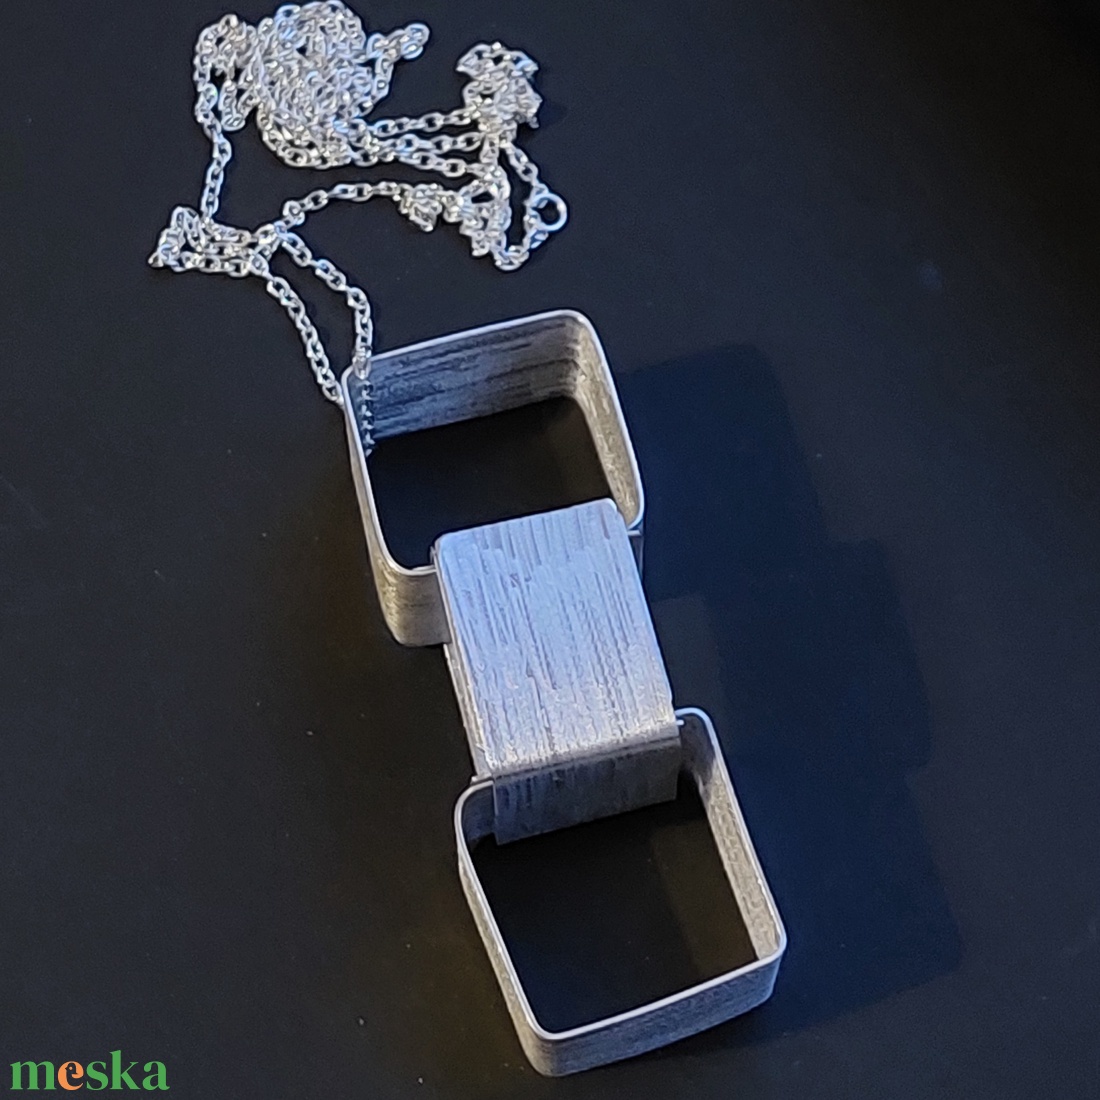 Minimál nyaklánc alumíniumból  - ékszer - nyaklánc - hosszú nyaklánc - Meska.hu